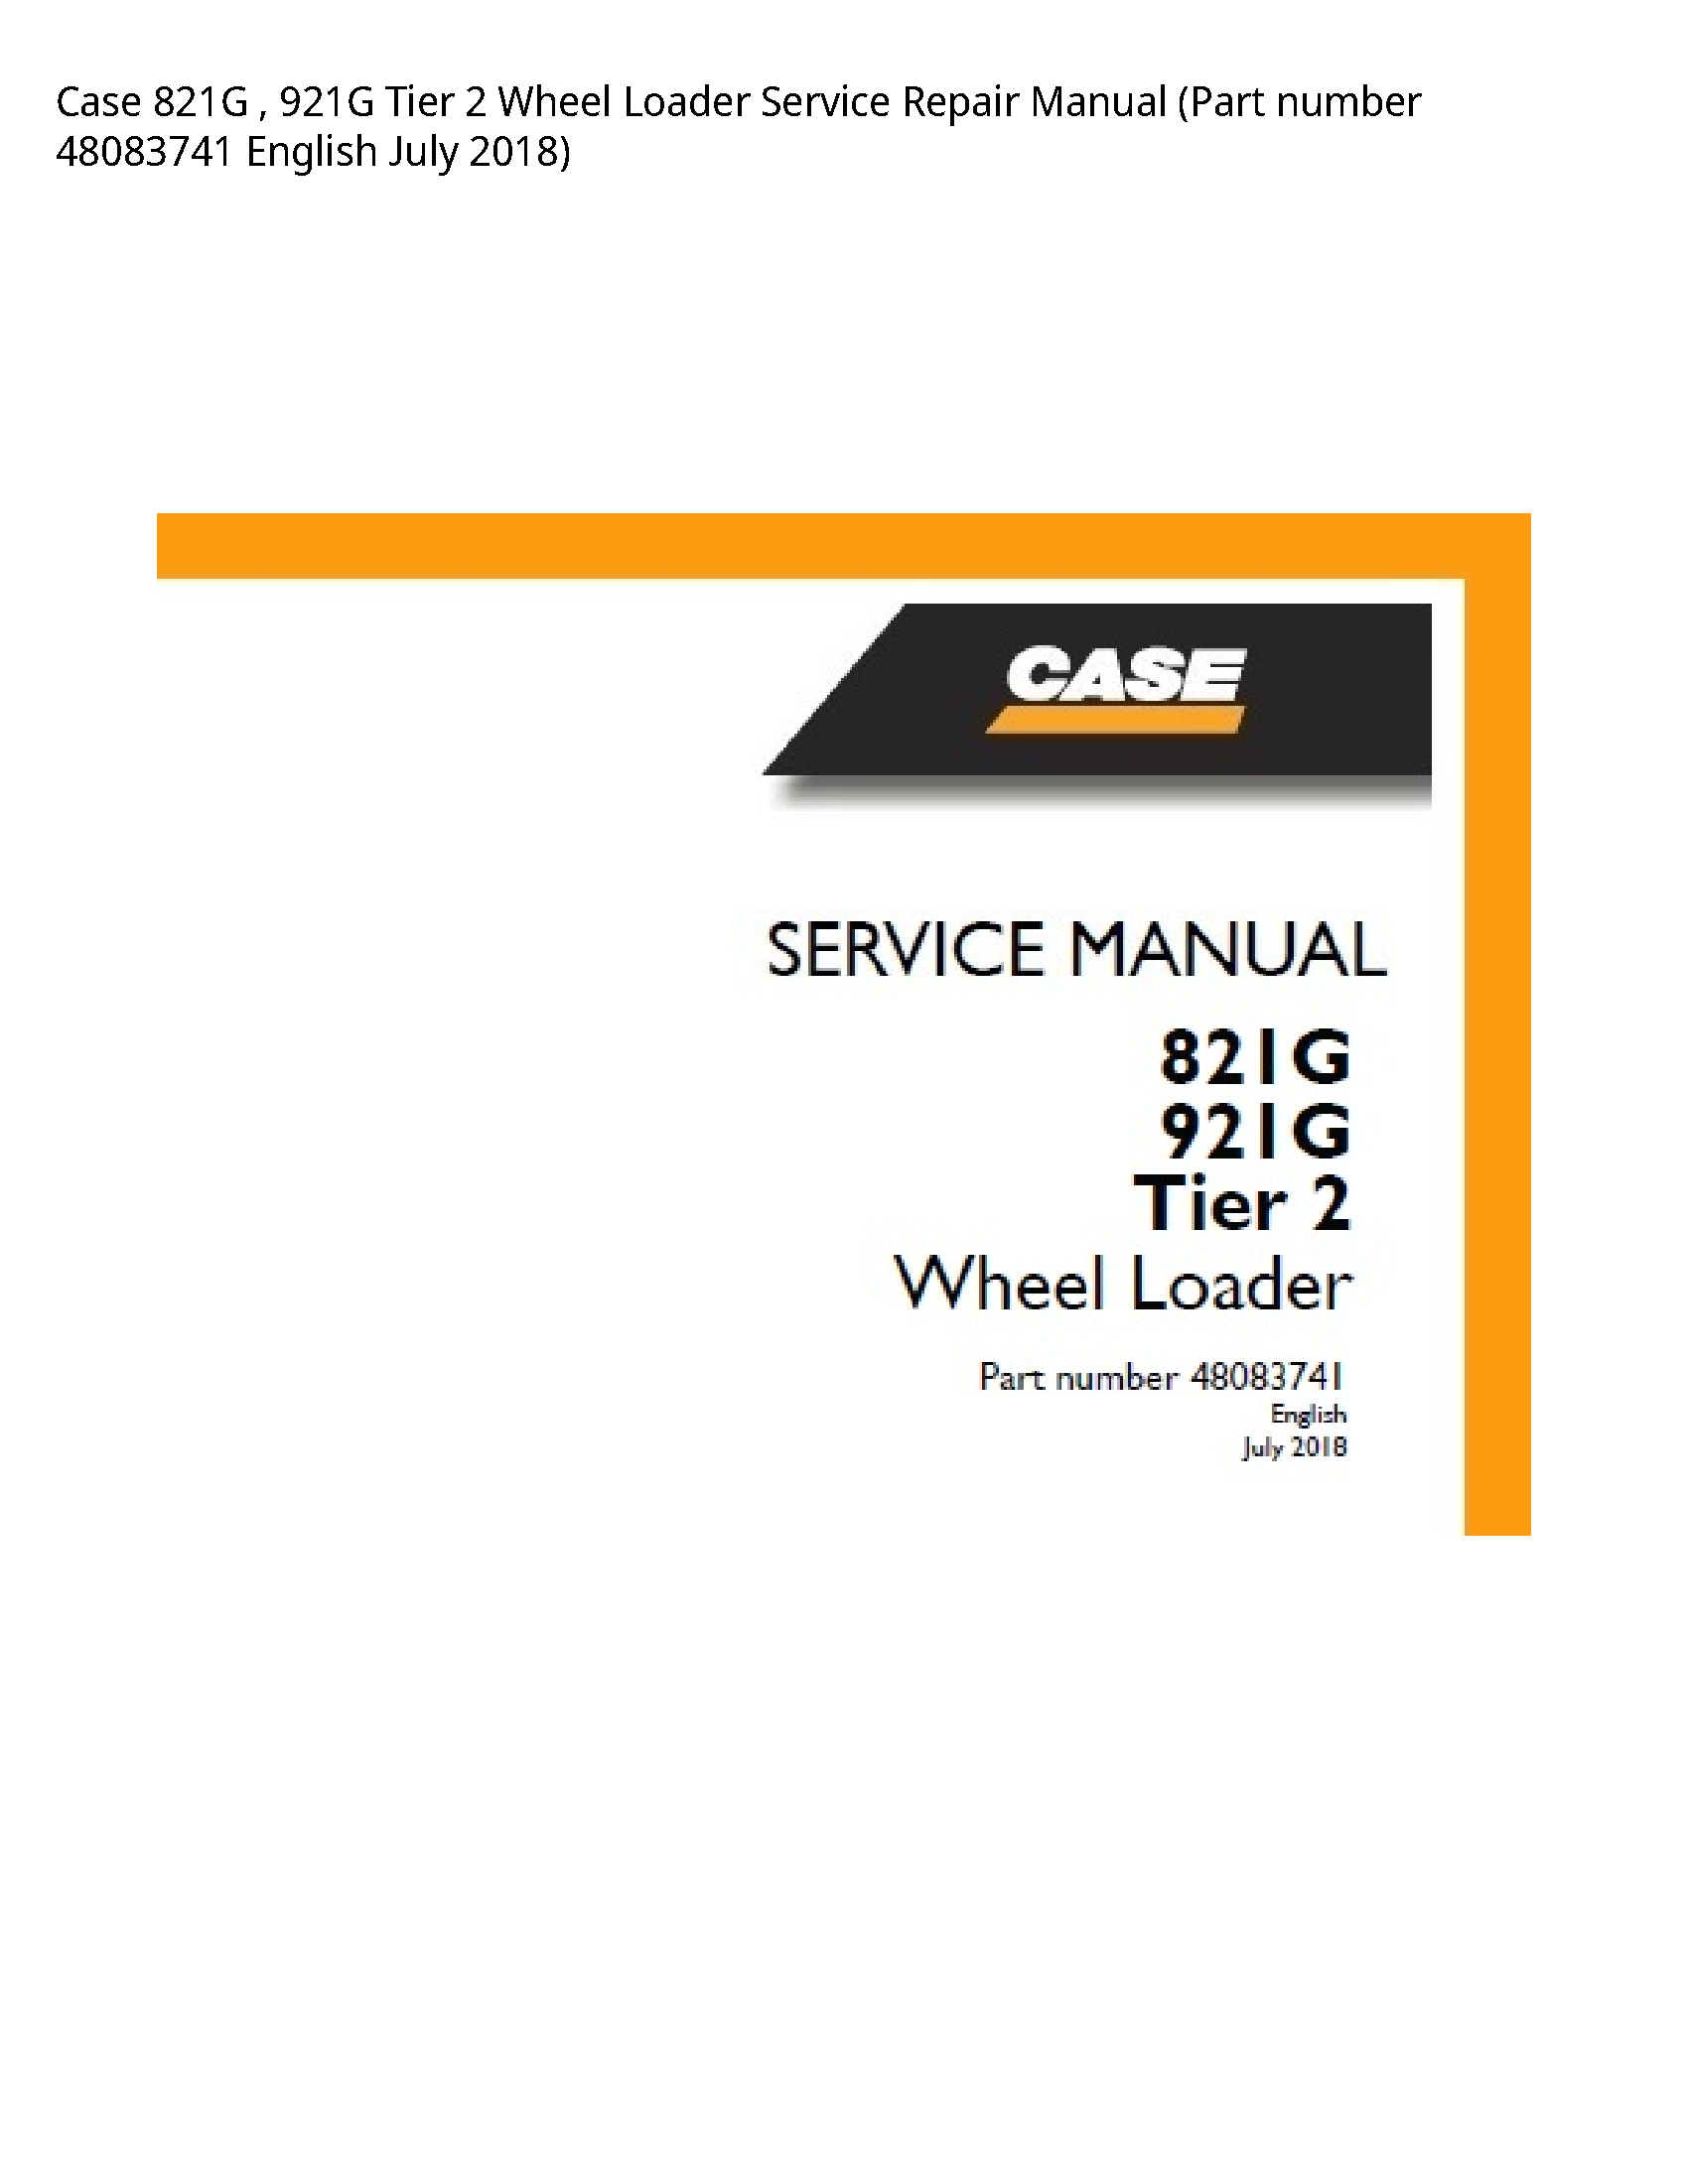 Case/Case IH 821G Tier Wheel Loader manual